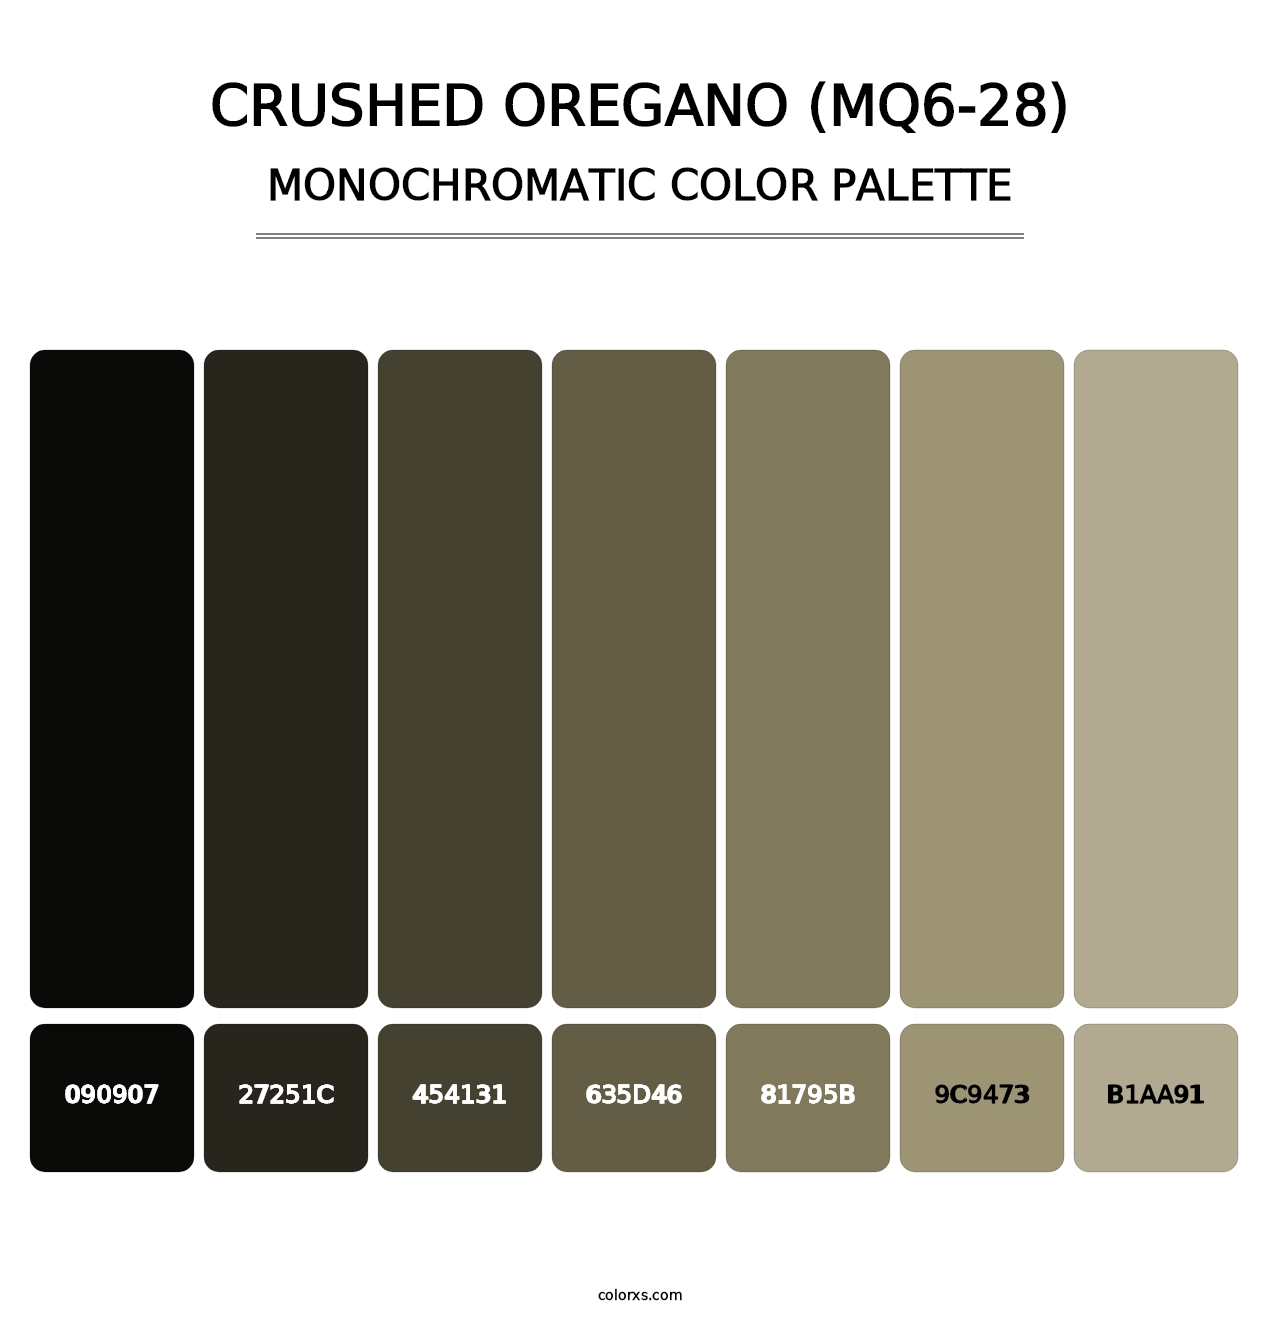 Crushed Oregano (MQ6-28) - Monochromatic Color Palette